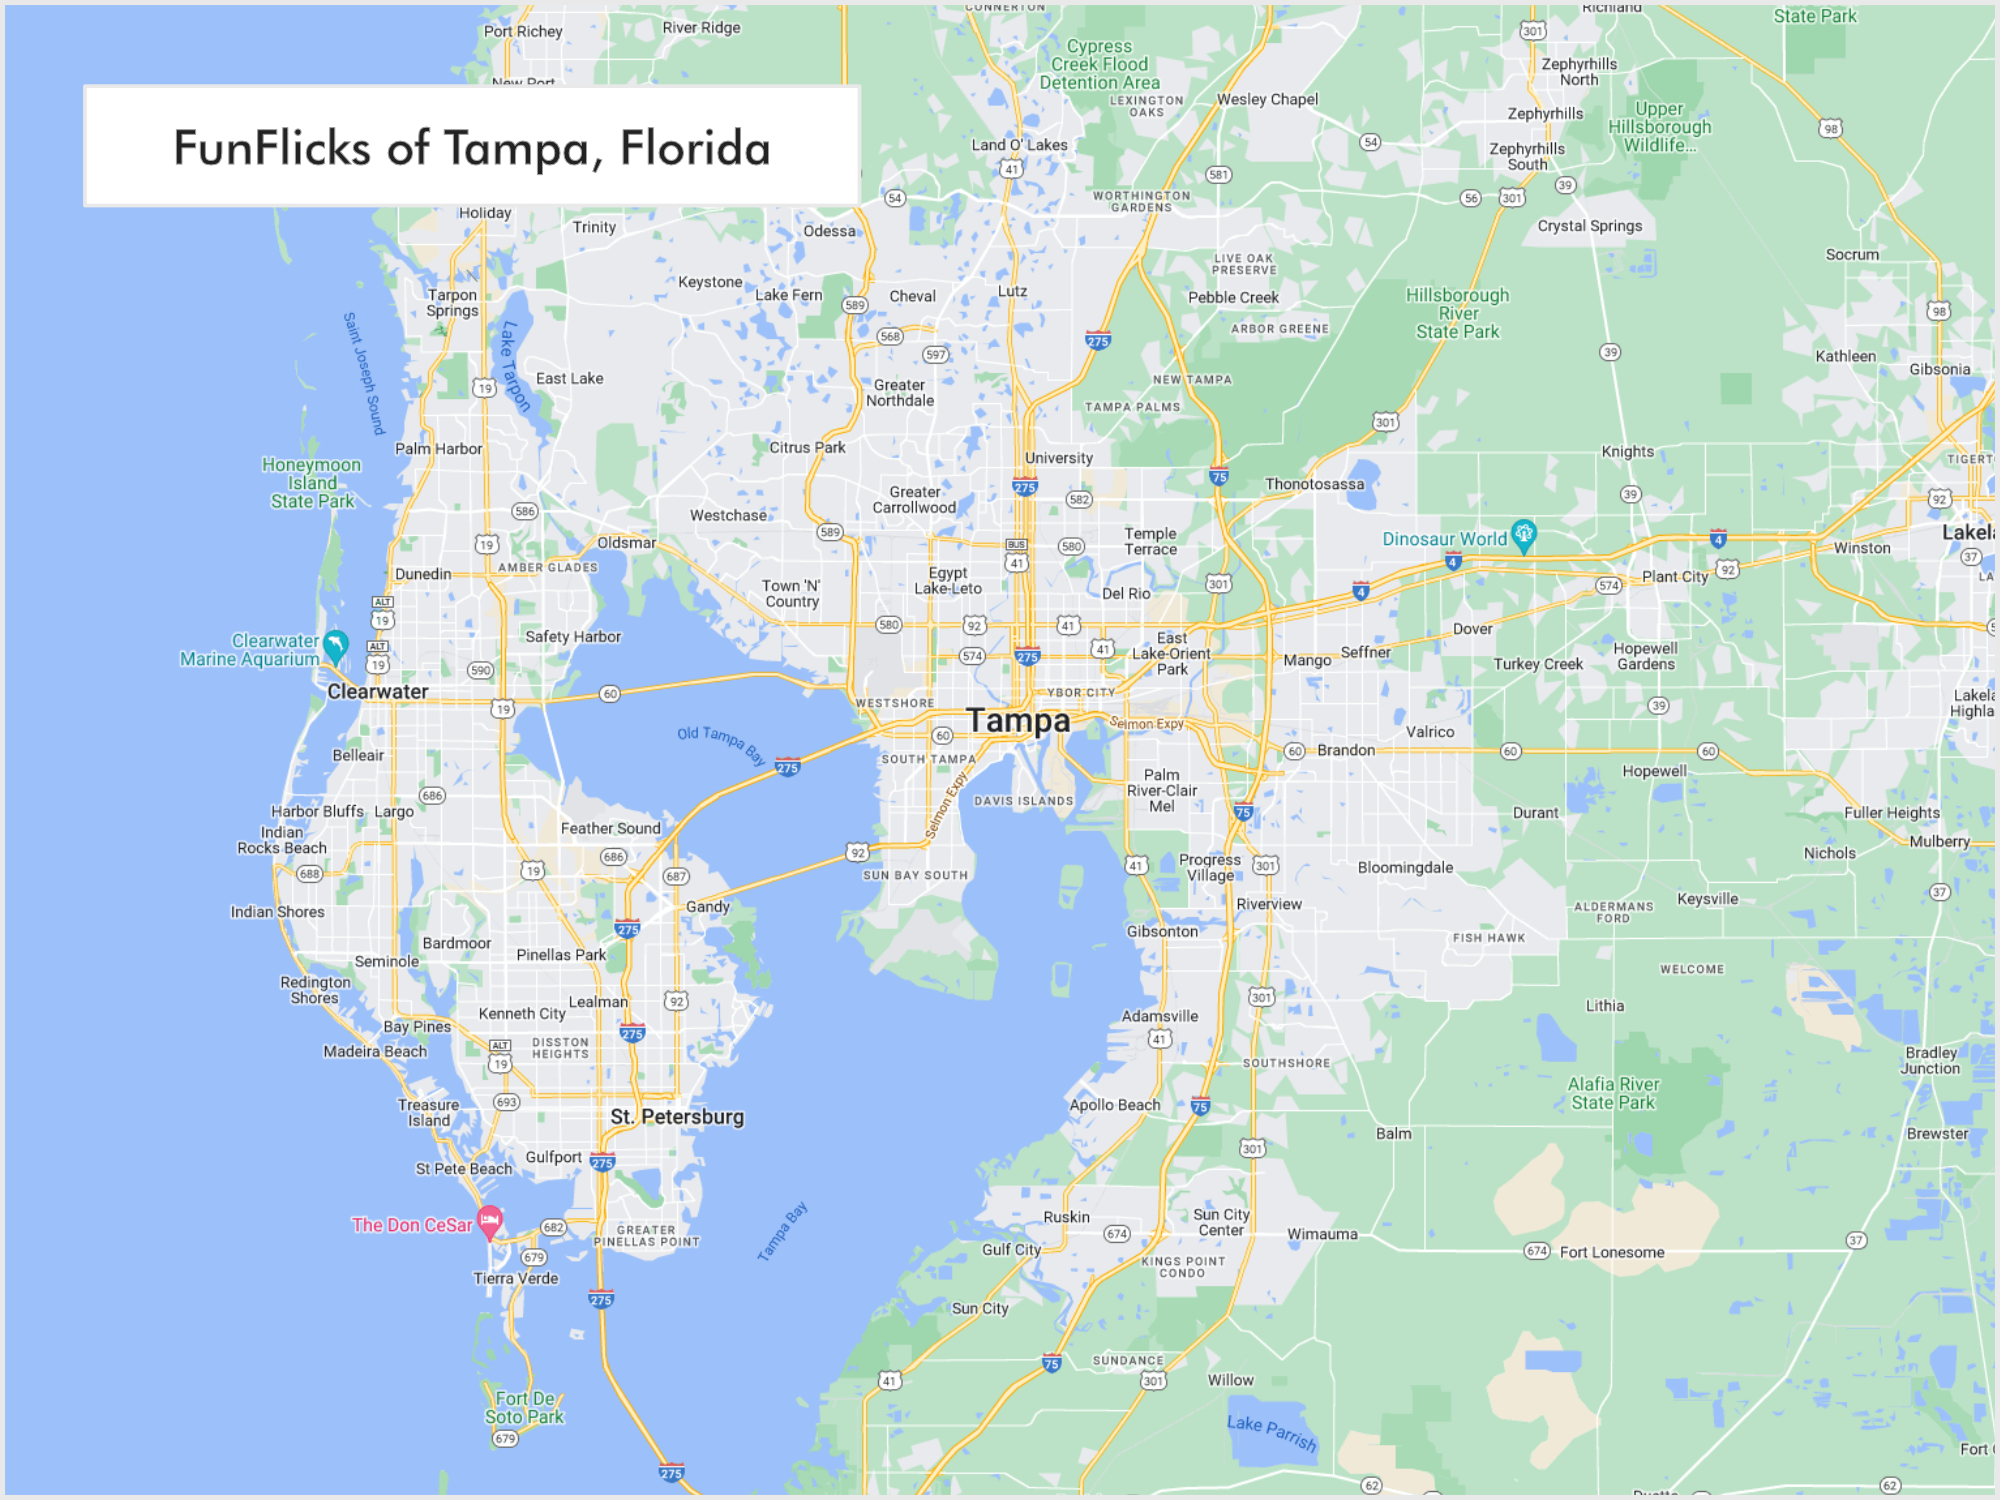 FunFlicks® Tampa territory map